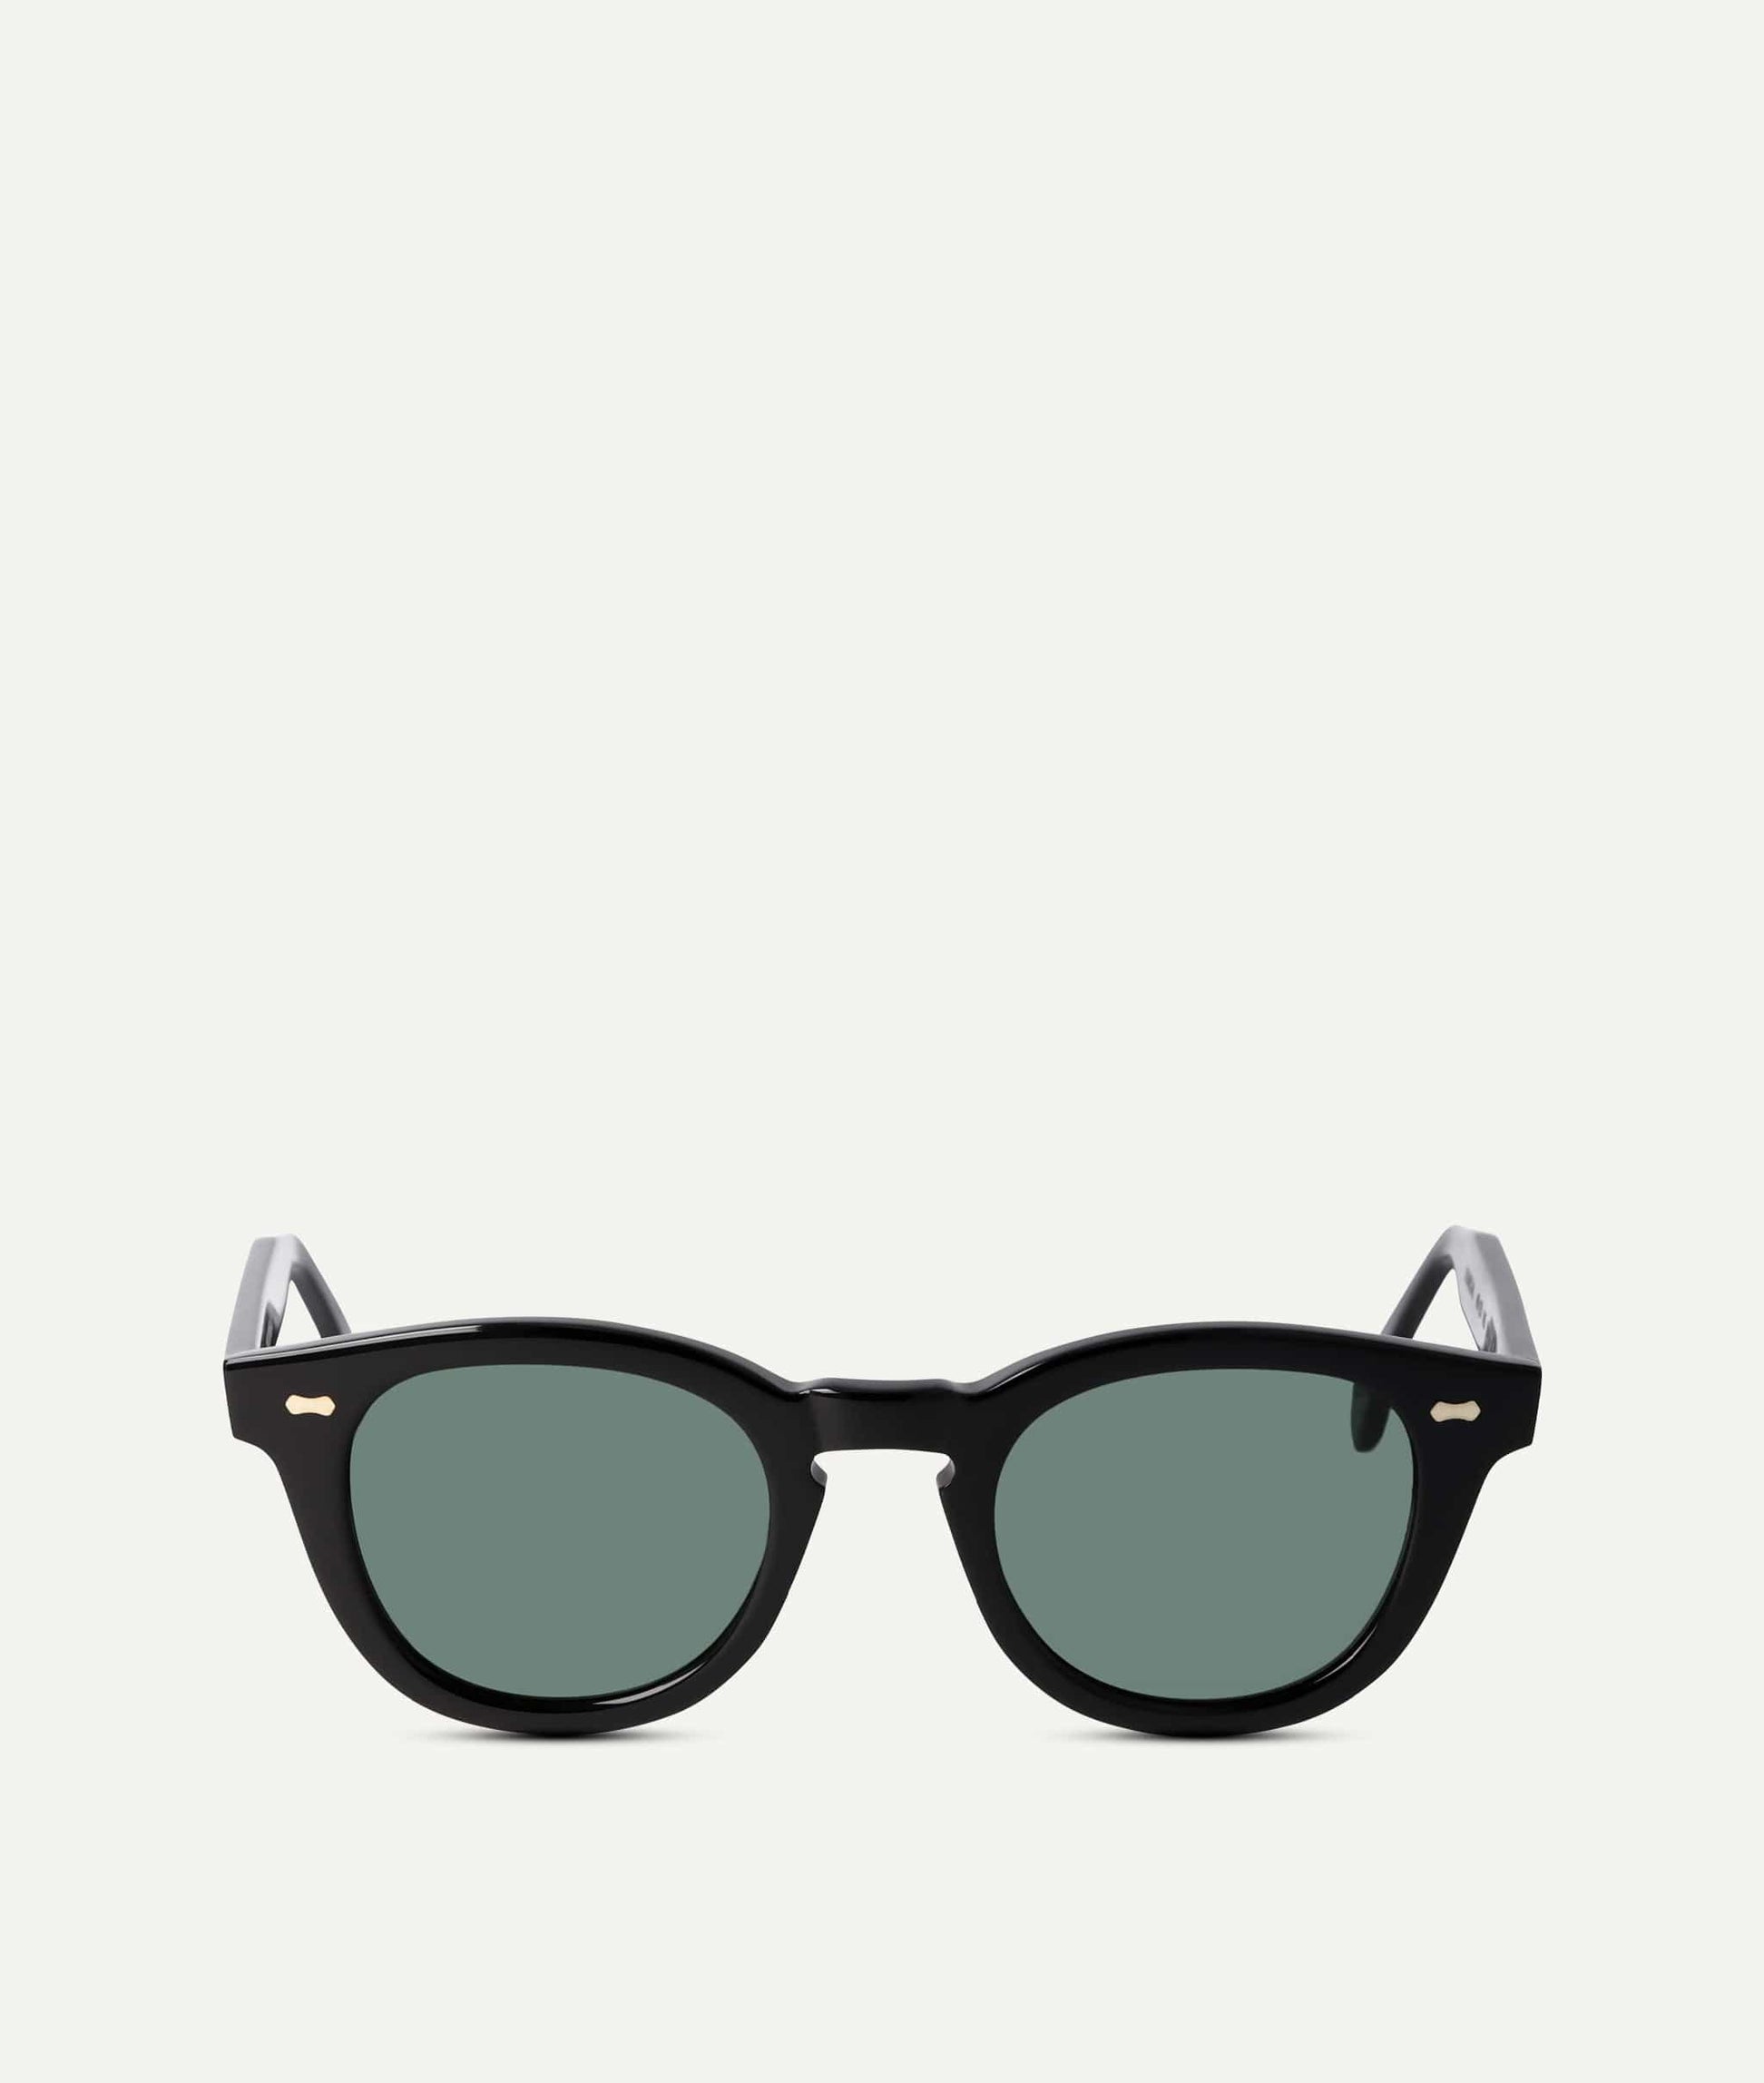 Herrensonnenbrillen | ETIQL Premium-Sonnenbrillen Männer für 